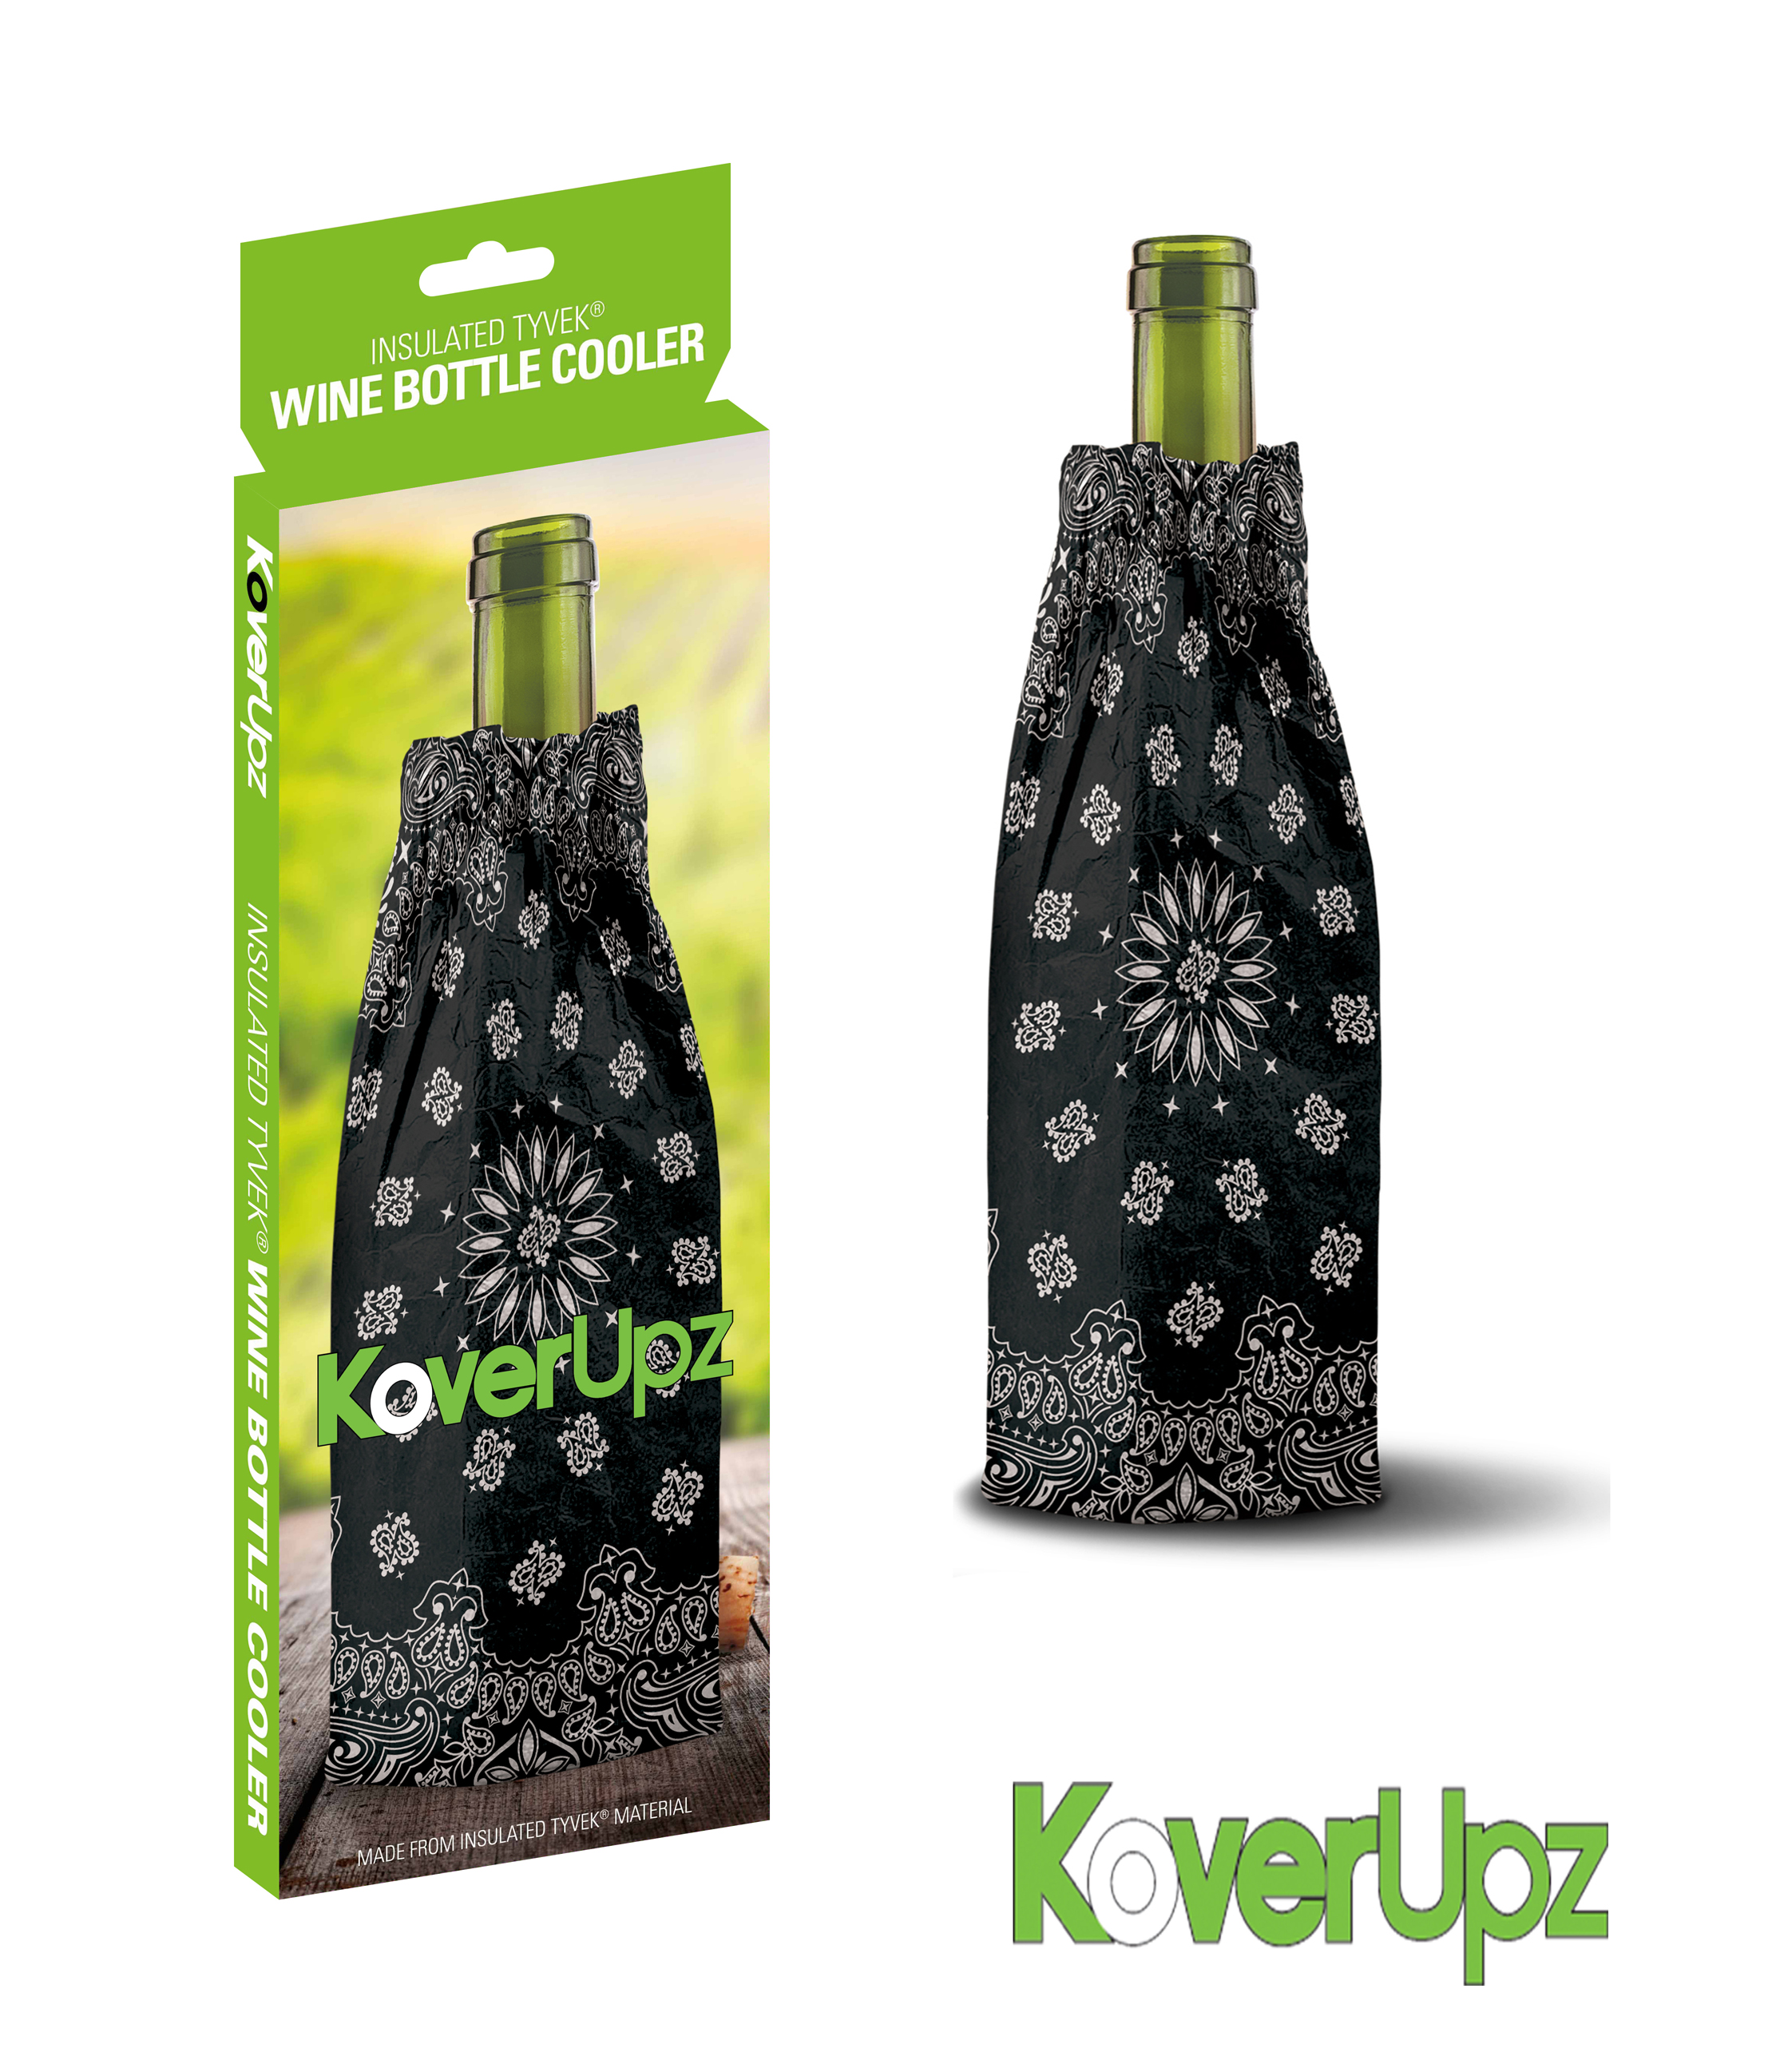 Bandana KoverUpz Insulated Wine Bottle/40oz Bottle Cooler